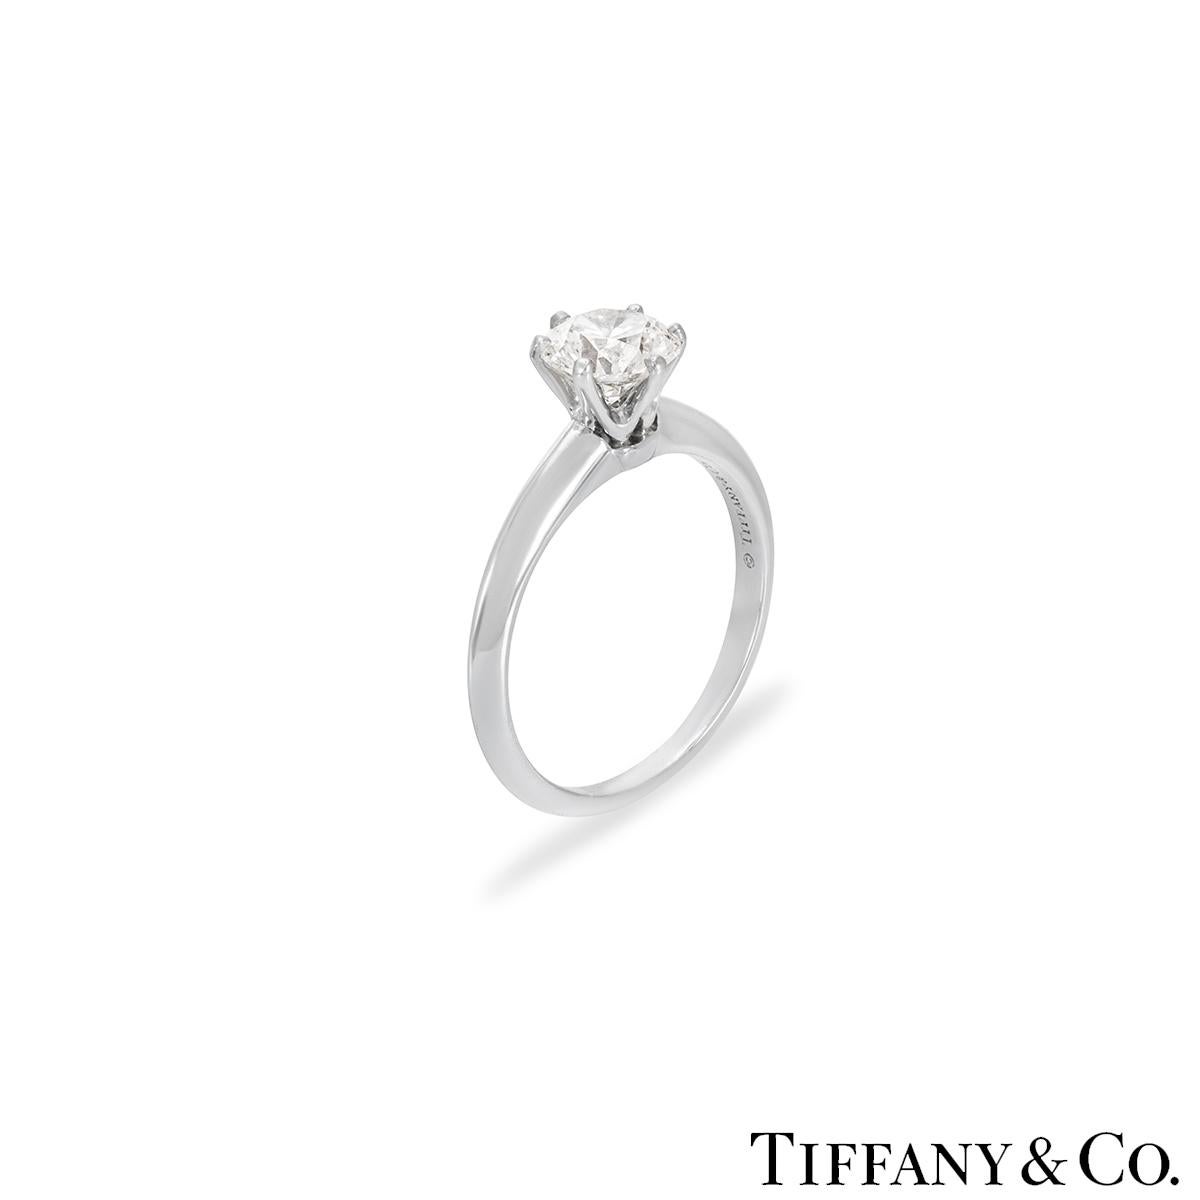 Une magnifique bague en platine sertie de diamants de Tiffany & Co. de la collection The Setting. La bague comprend un diamant rond de taille brillant dans une monture à 6 griffes d'un poids de 1,14ct, de couleur H et de pureté VVS1. La bague